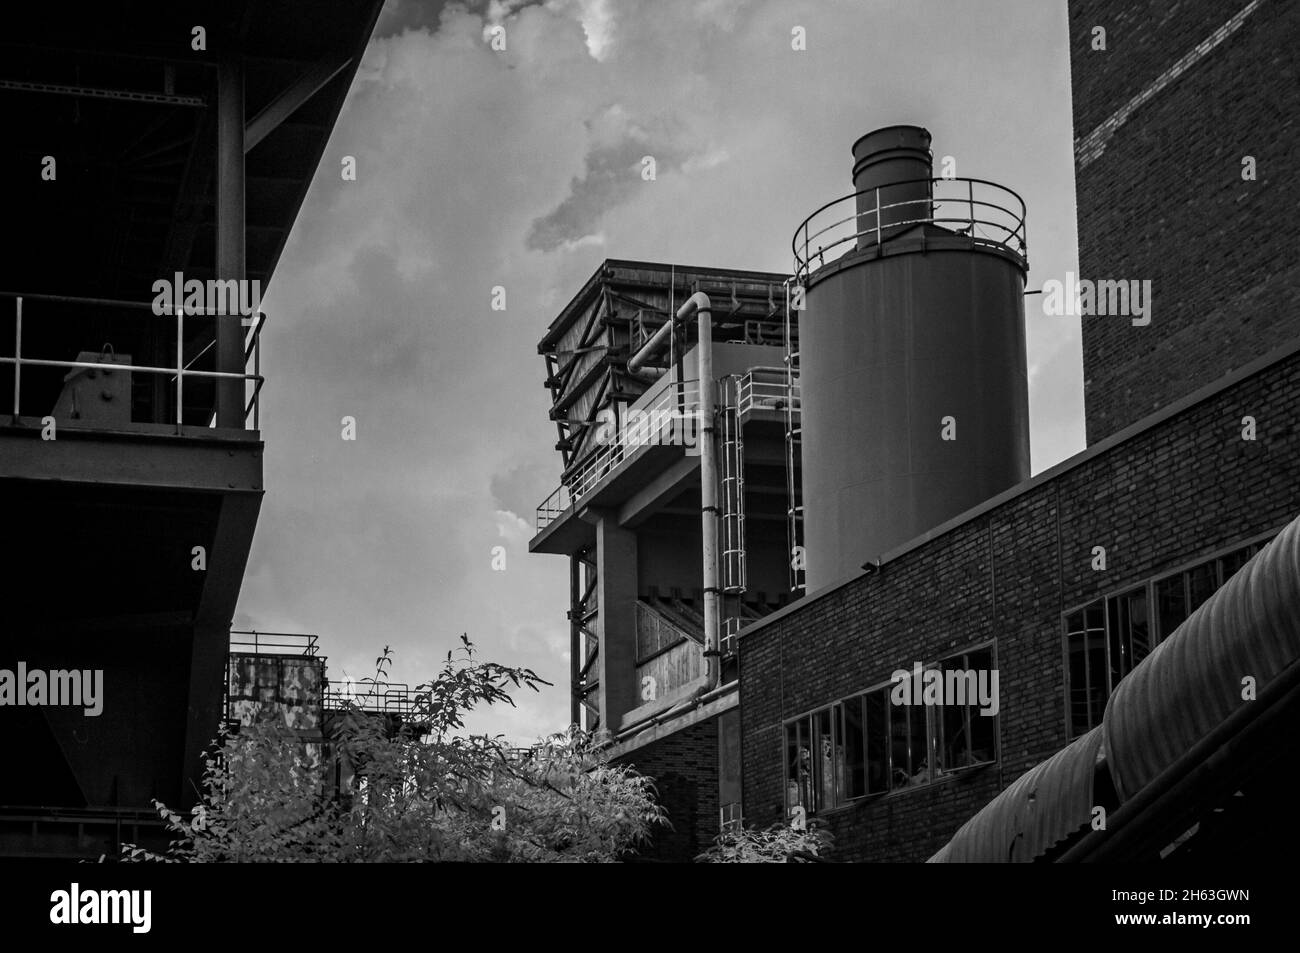 vecchie strutture presso il sito patrimonio mondiale dell'unesco 'zeche zollverein' - un monumento industriale di una ex miniera di cole a essen, renania settentrionale-vestfalia, germania. sparare in bianco e nero con termocamera a infrarossi modificata, ir850 nm. Foto Stock